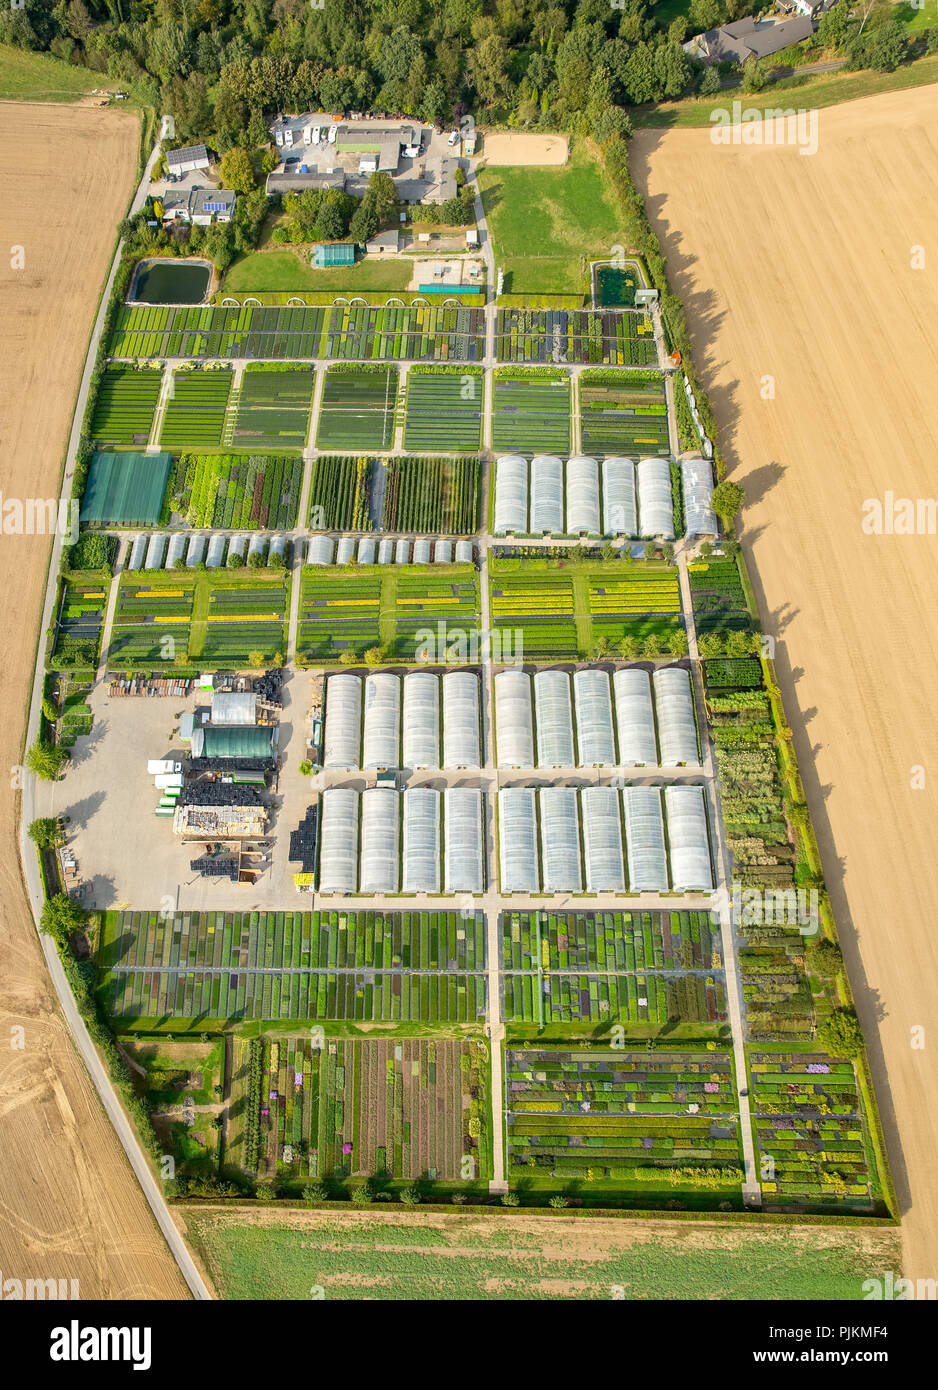 Vista aérea, guardería Kunze, horticultura, invernaderos, Heiligenhaus, área de Ruhr, Renania del Norte-Westfalia, Alemania Foto de stock